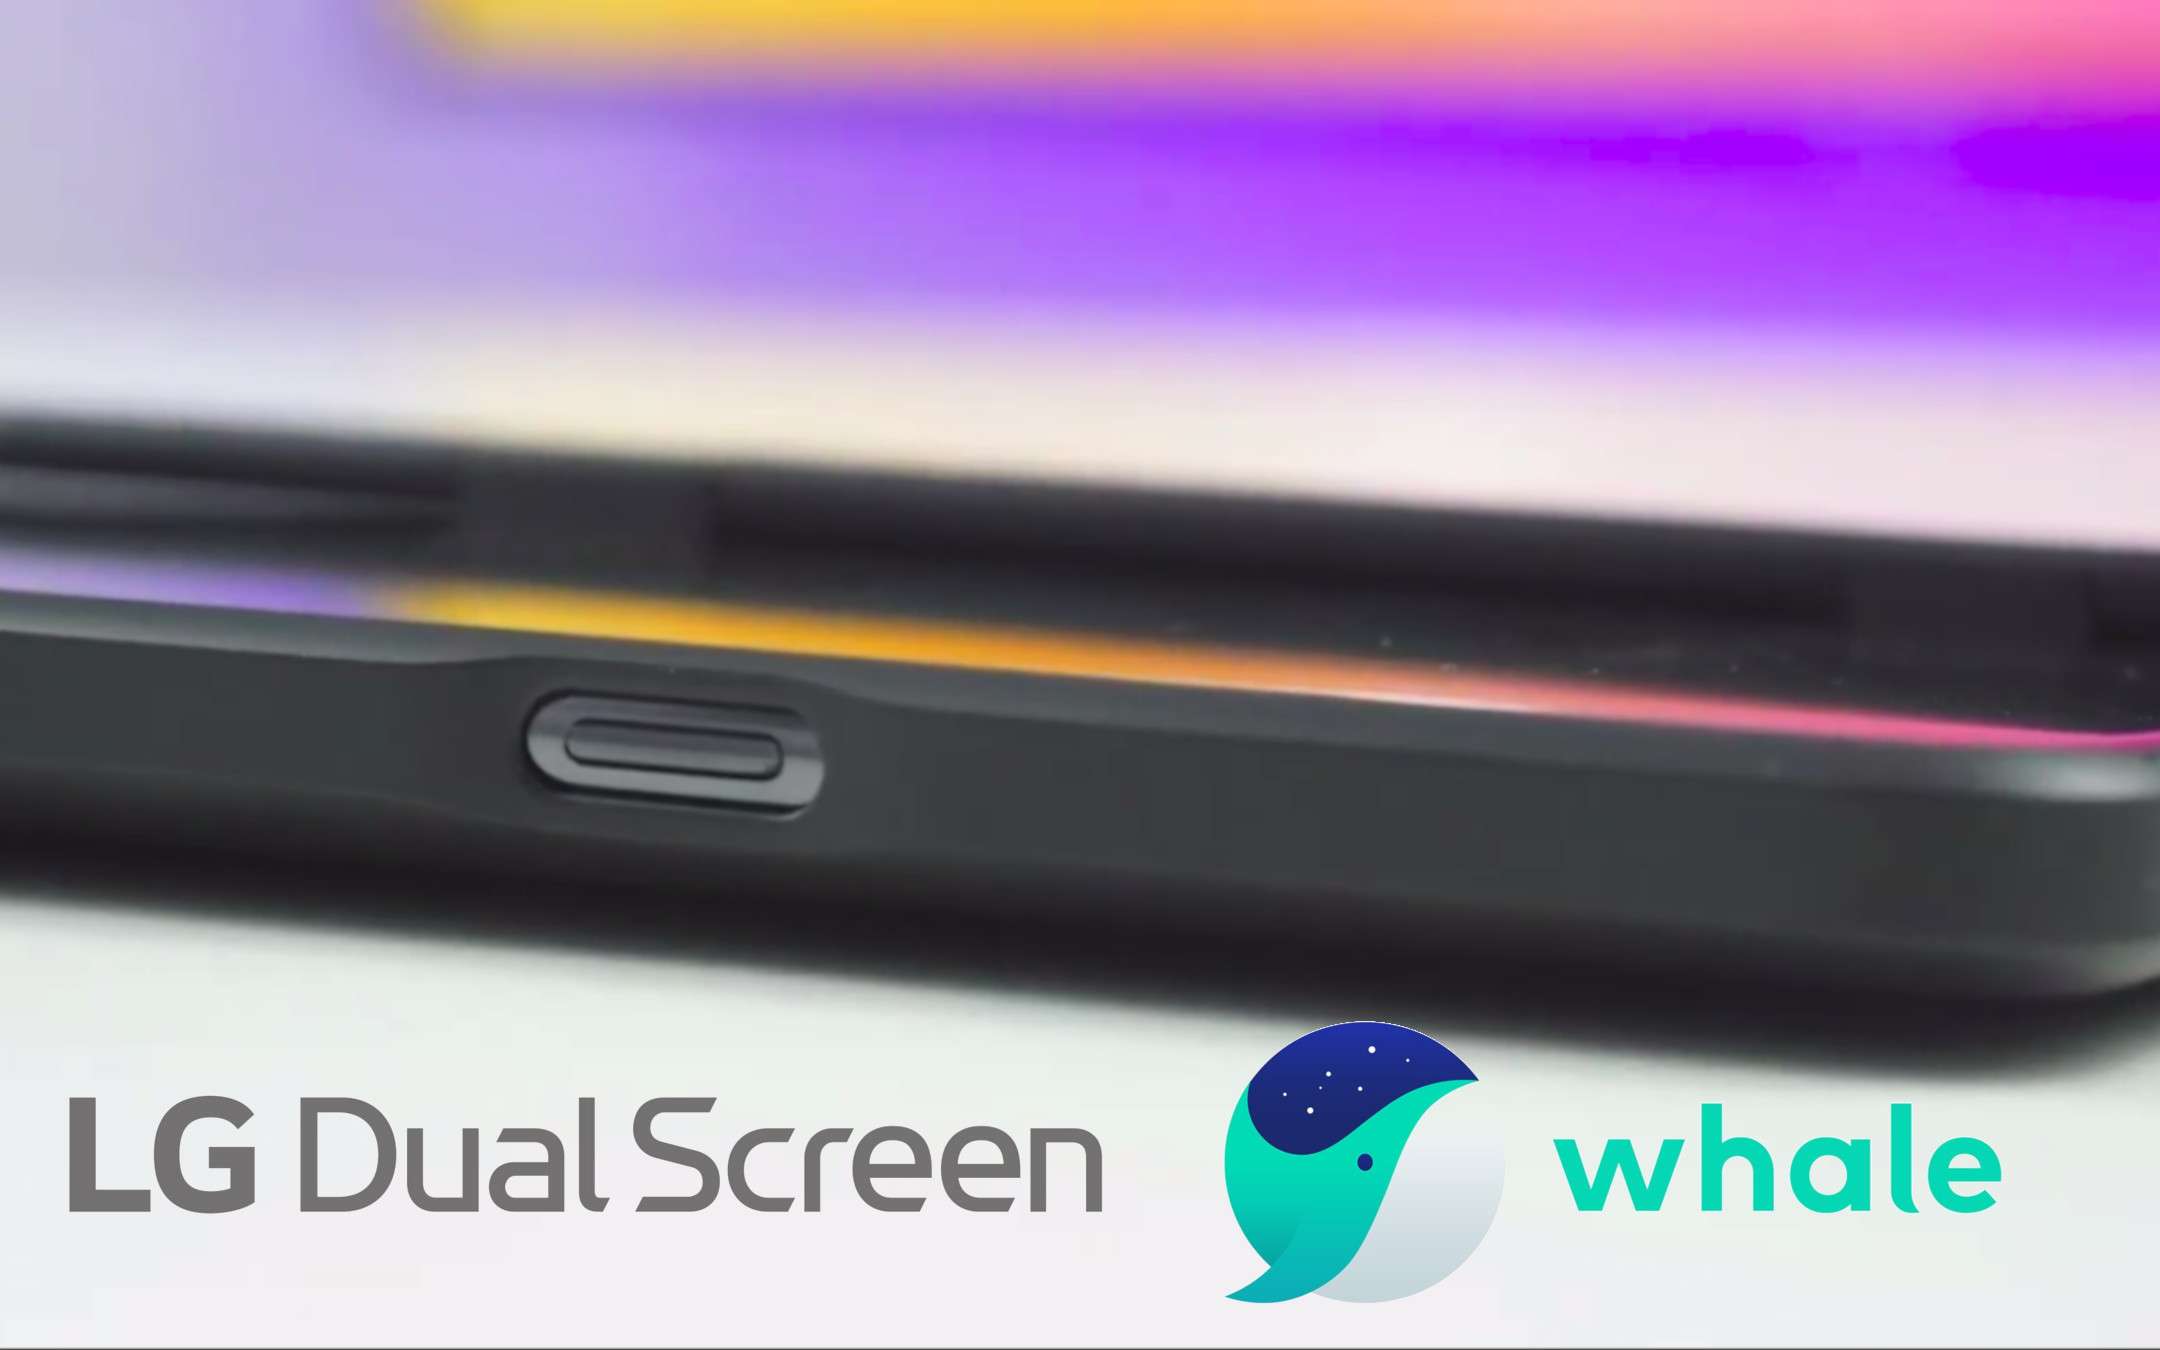 Whale, il browser LG per dual screen e pieghevoli